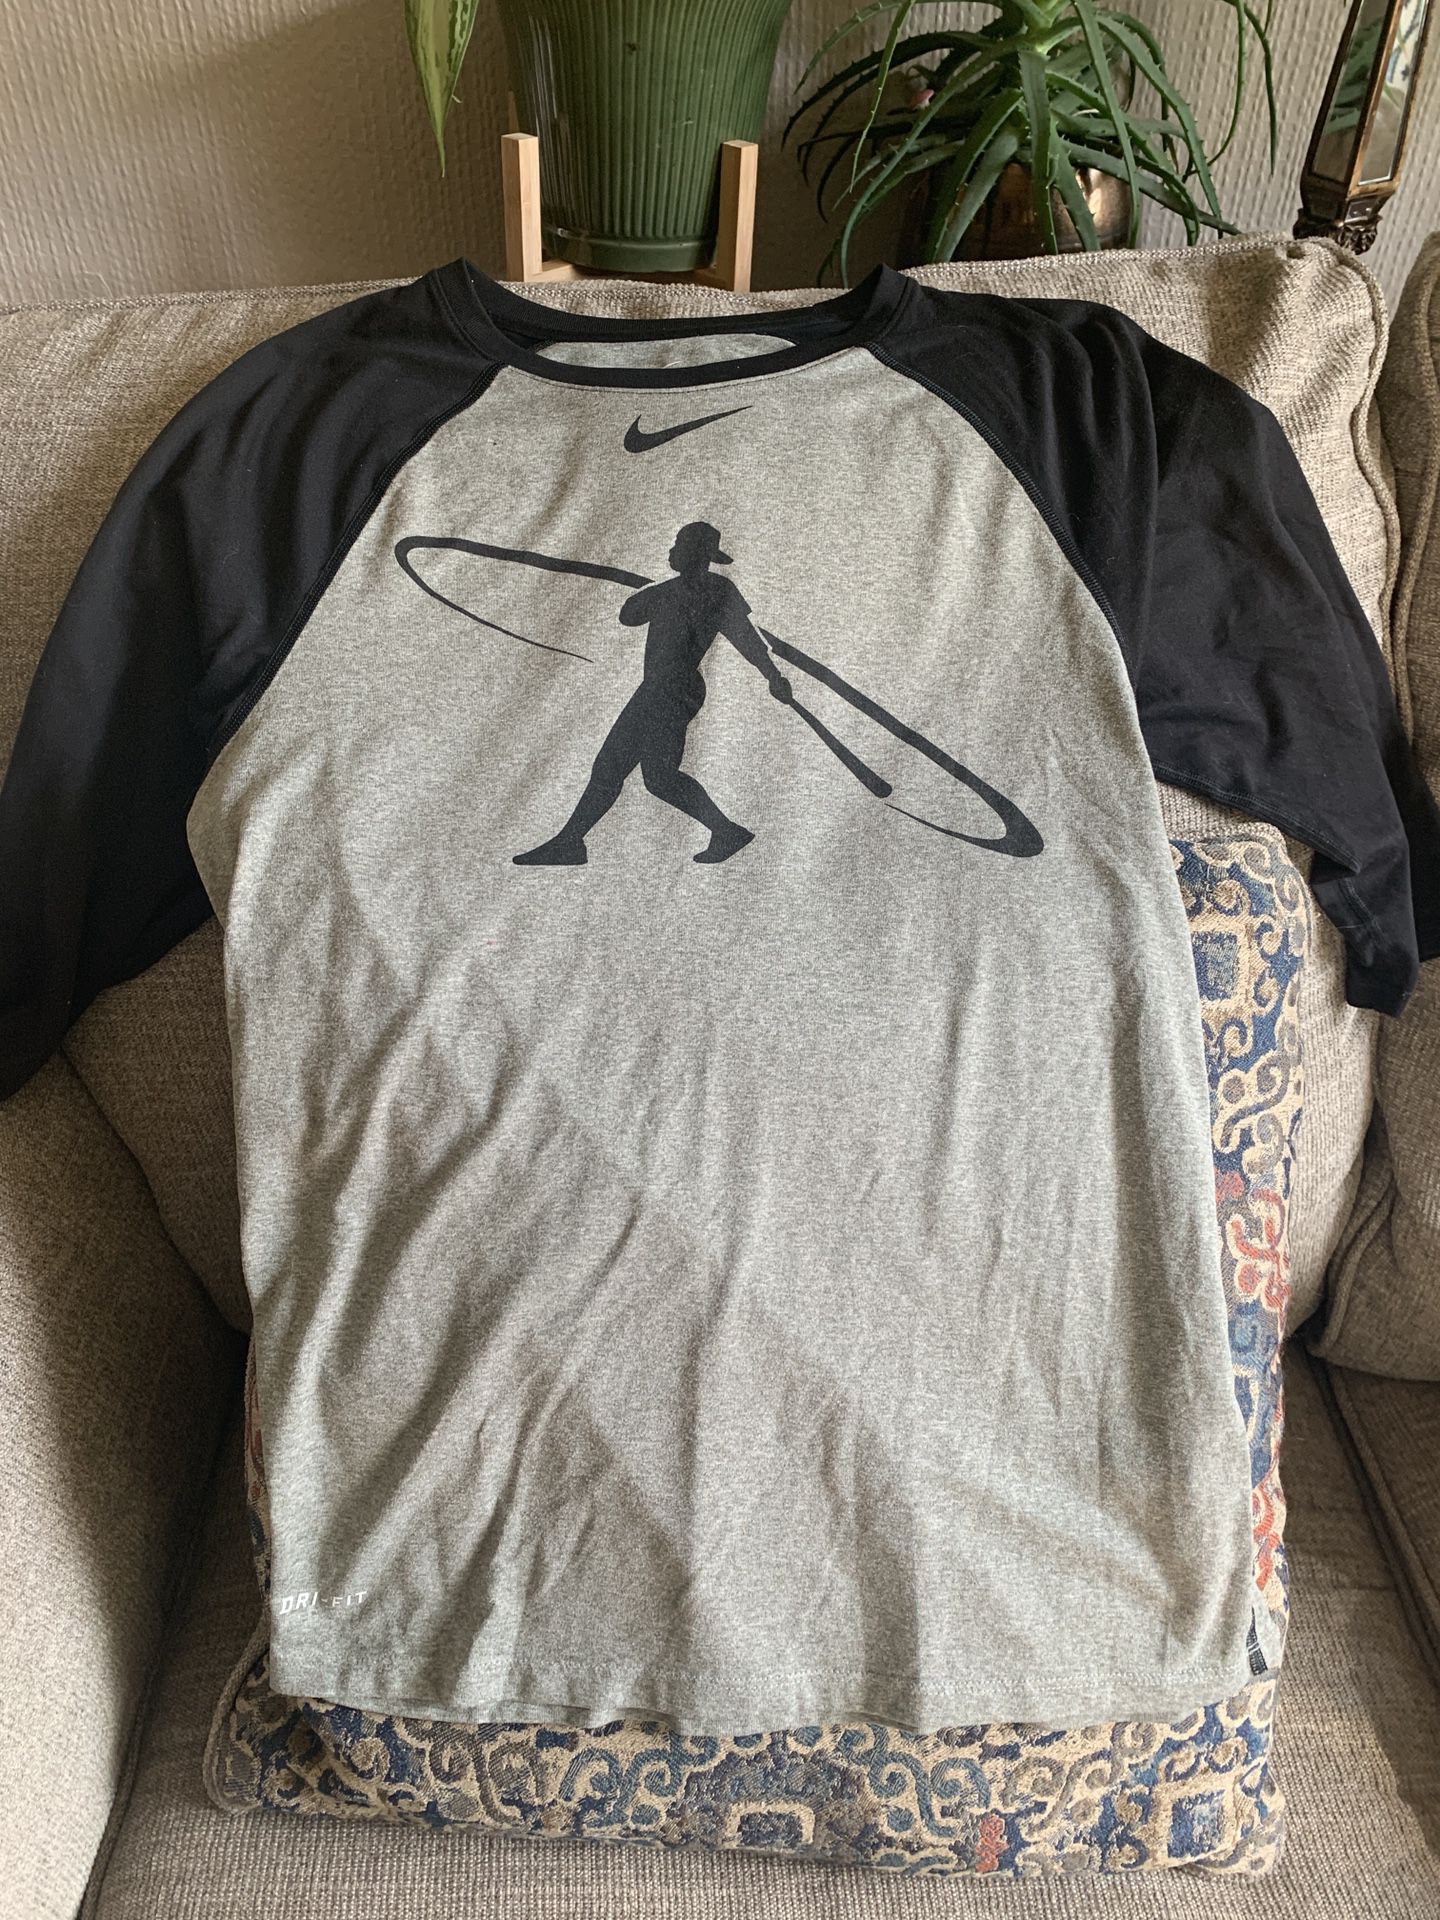 New Nike Tee Dri-Fit Baseball T-Shirt Sz S